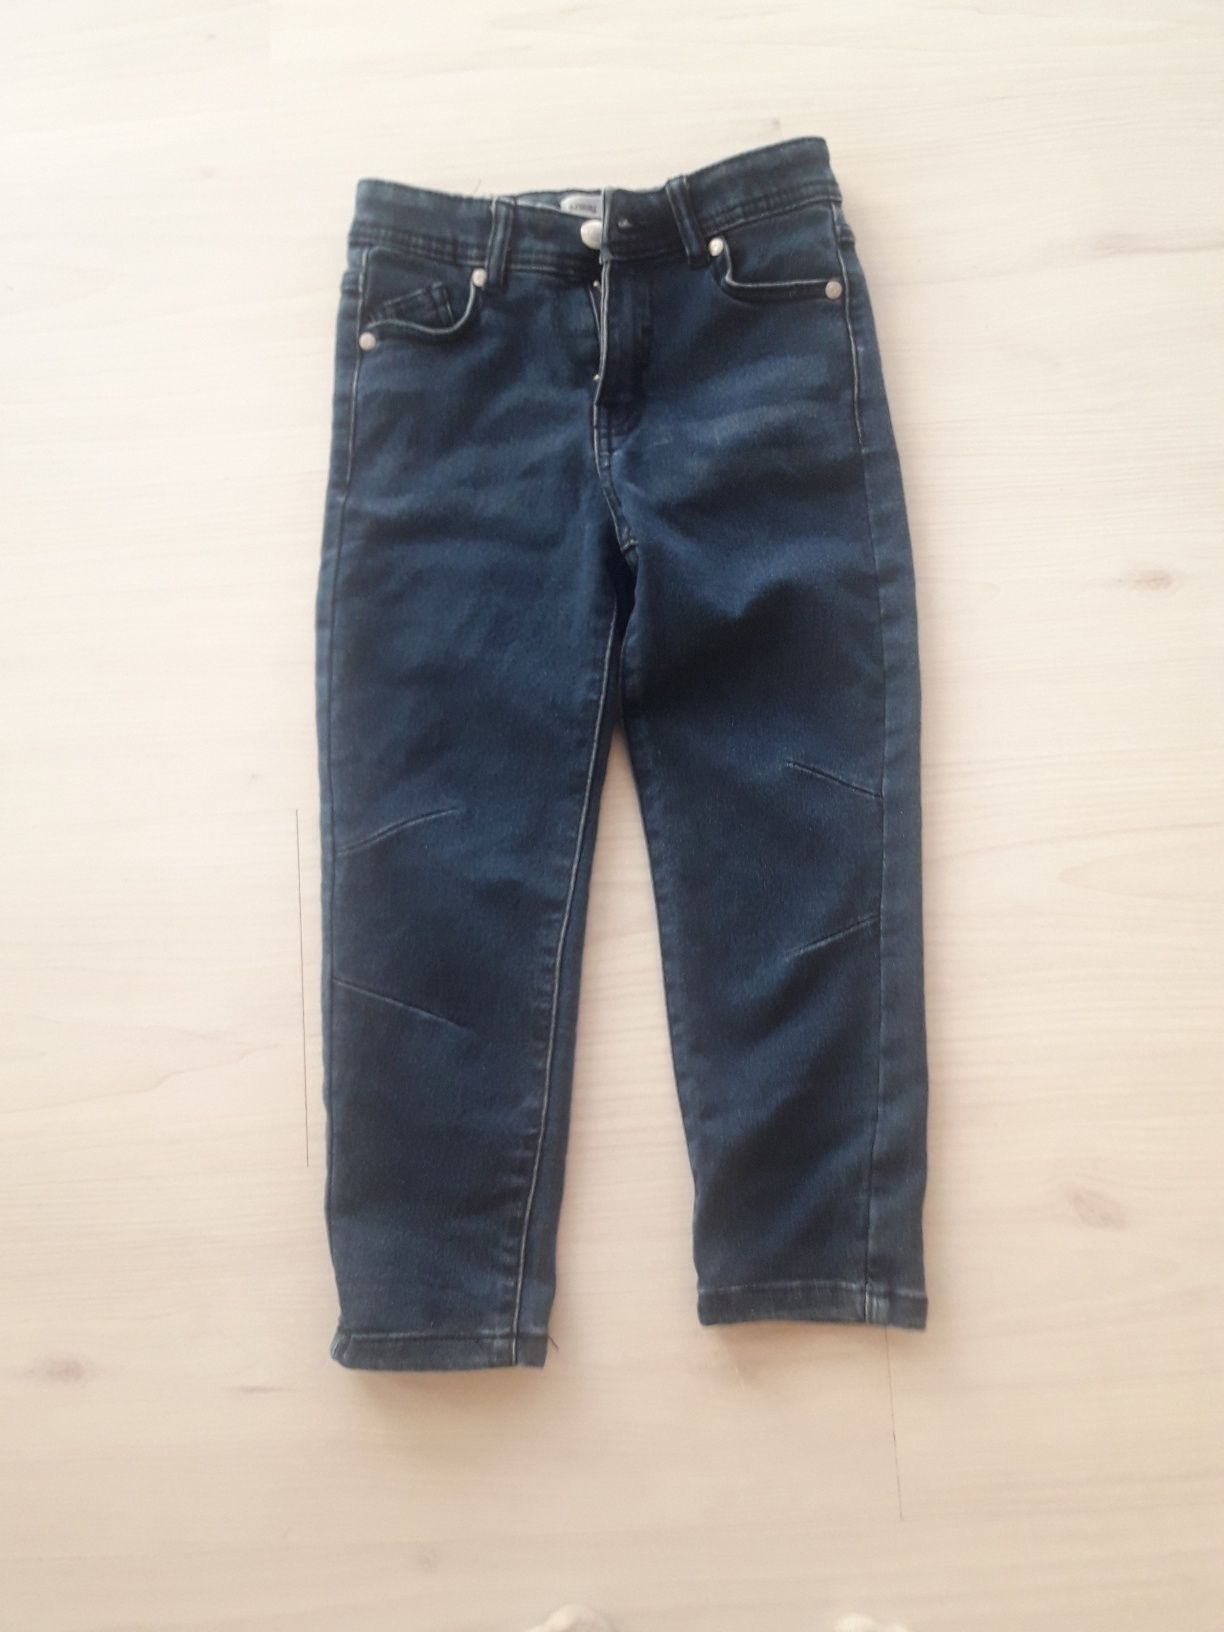 Spodnie jeansy 116 chlopiec nowe stan idealny